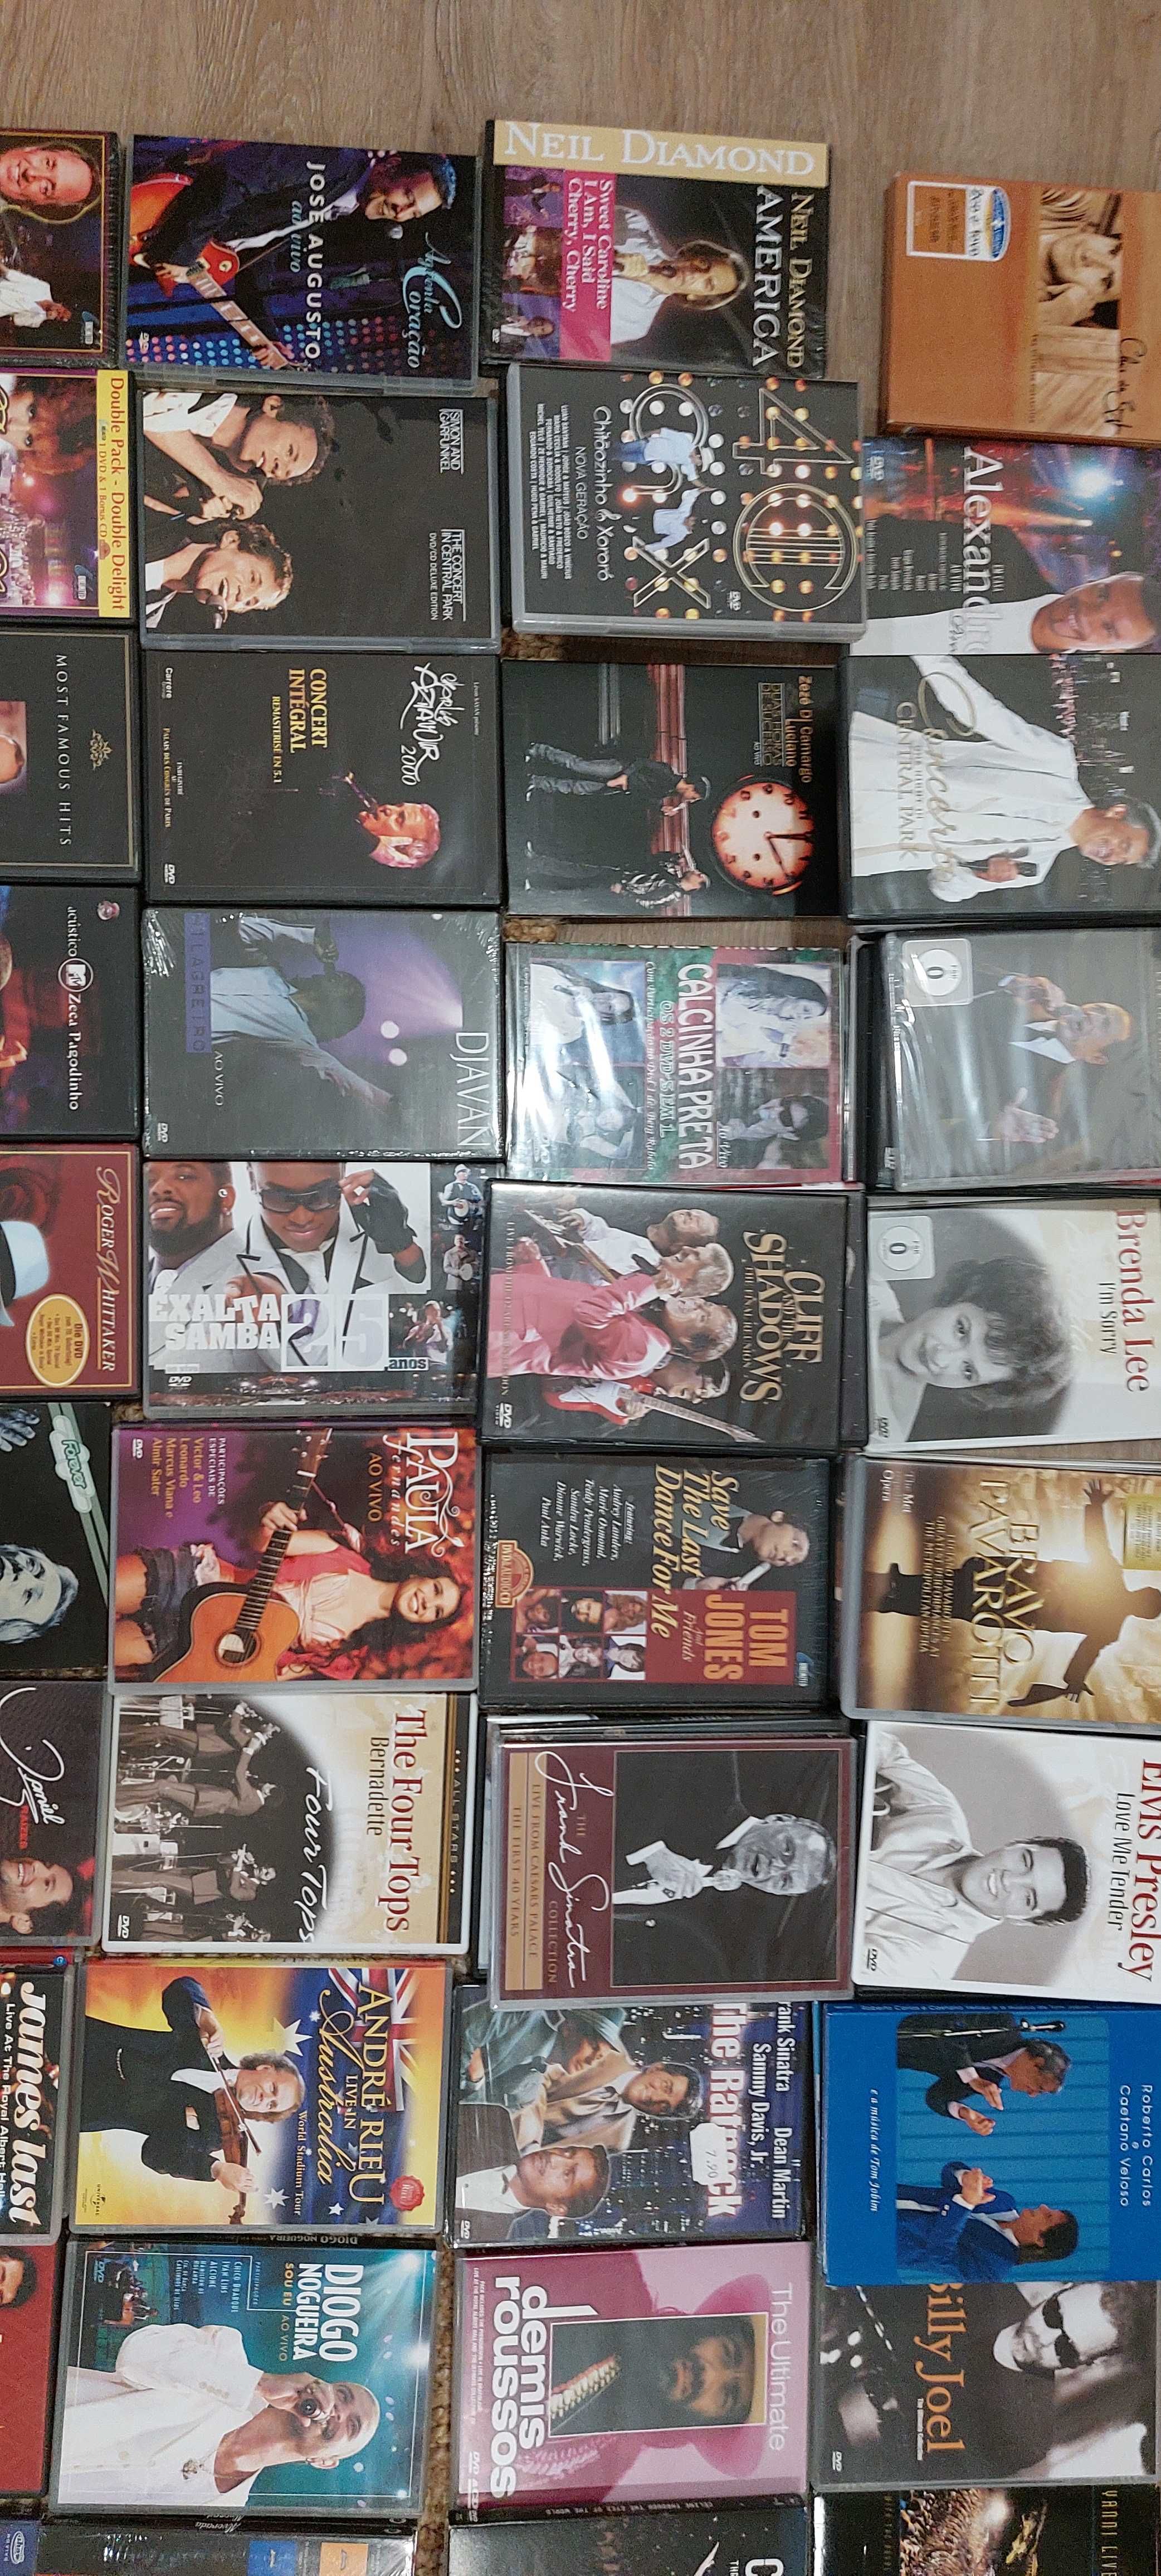 Musica diversa em dvd's